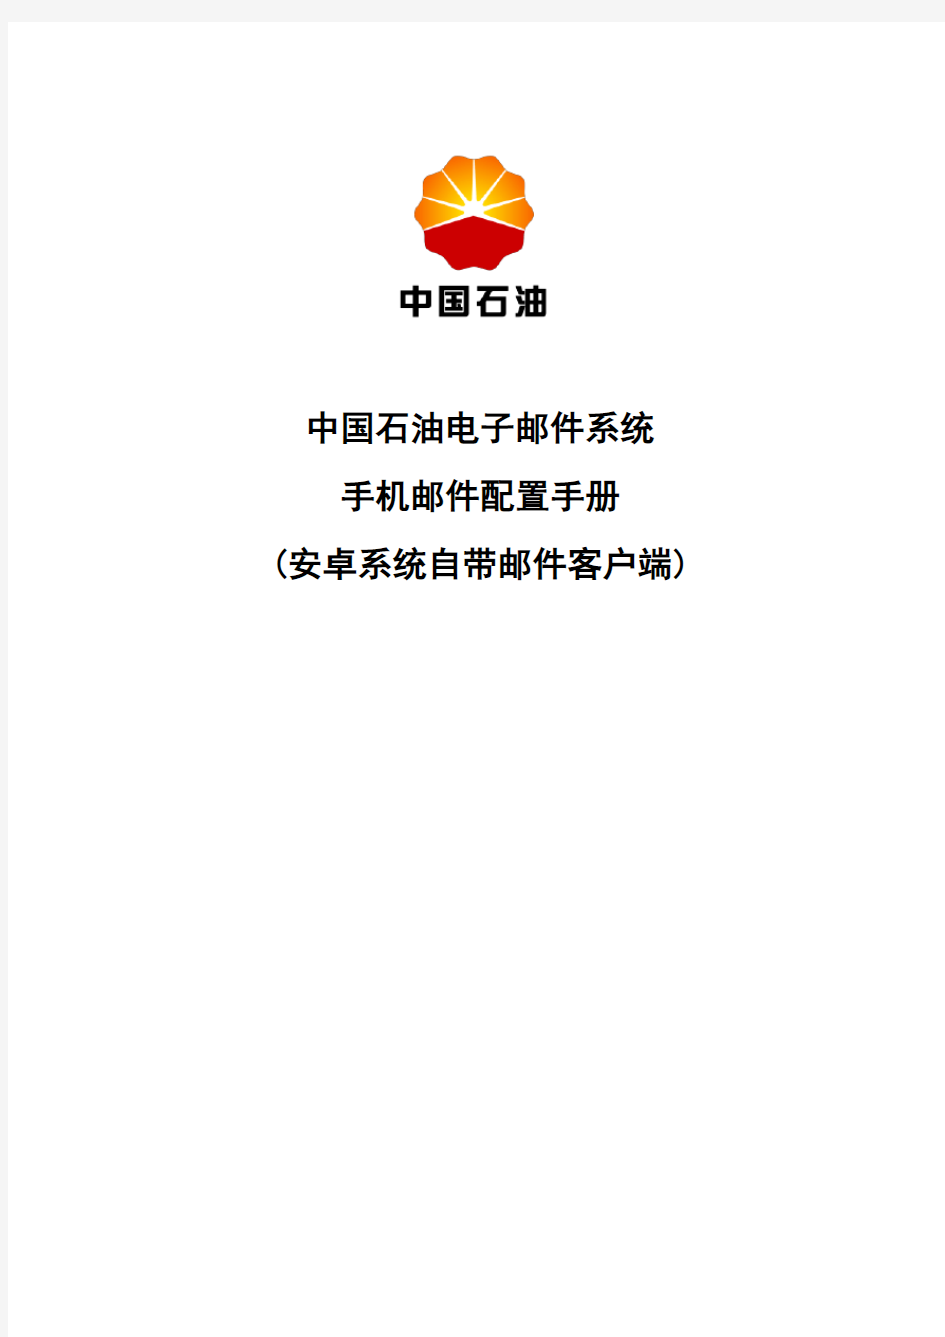 中国石油电子邮件系统手机邮件配置手册(安卓系统自带邮件客户端)